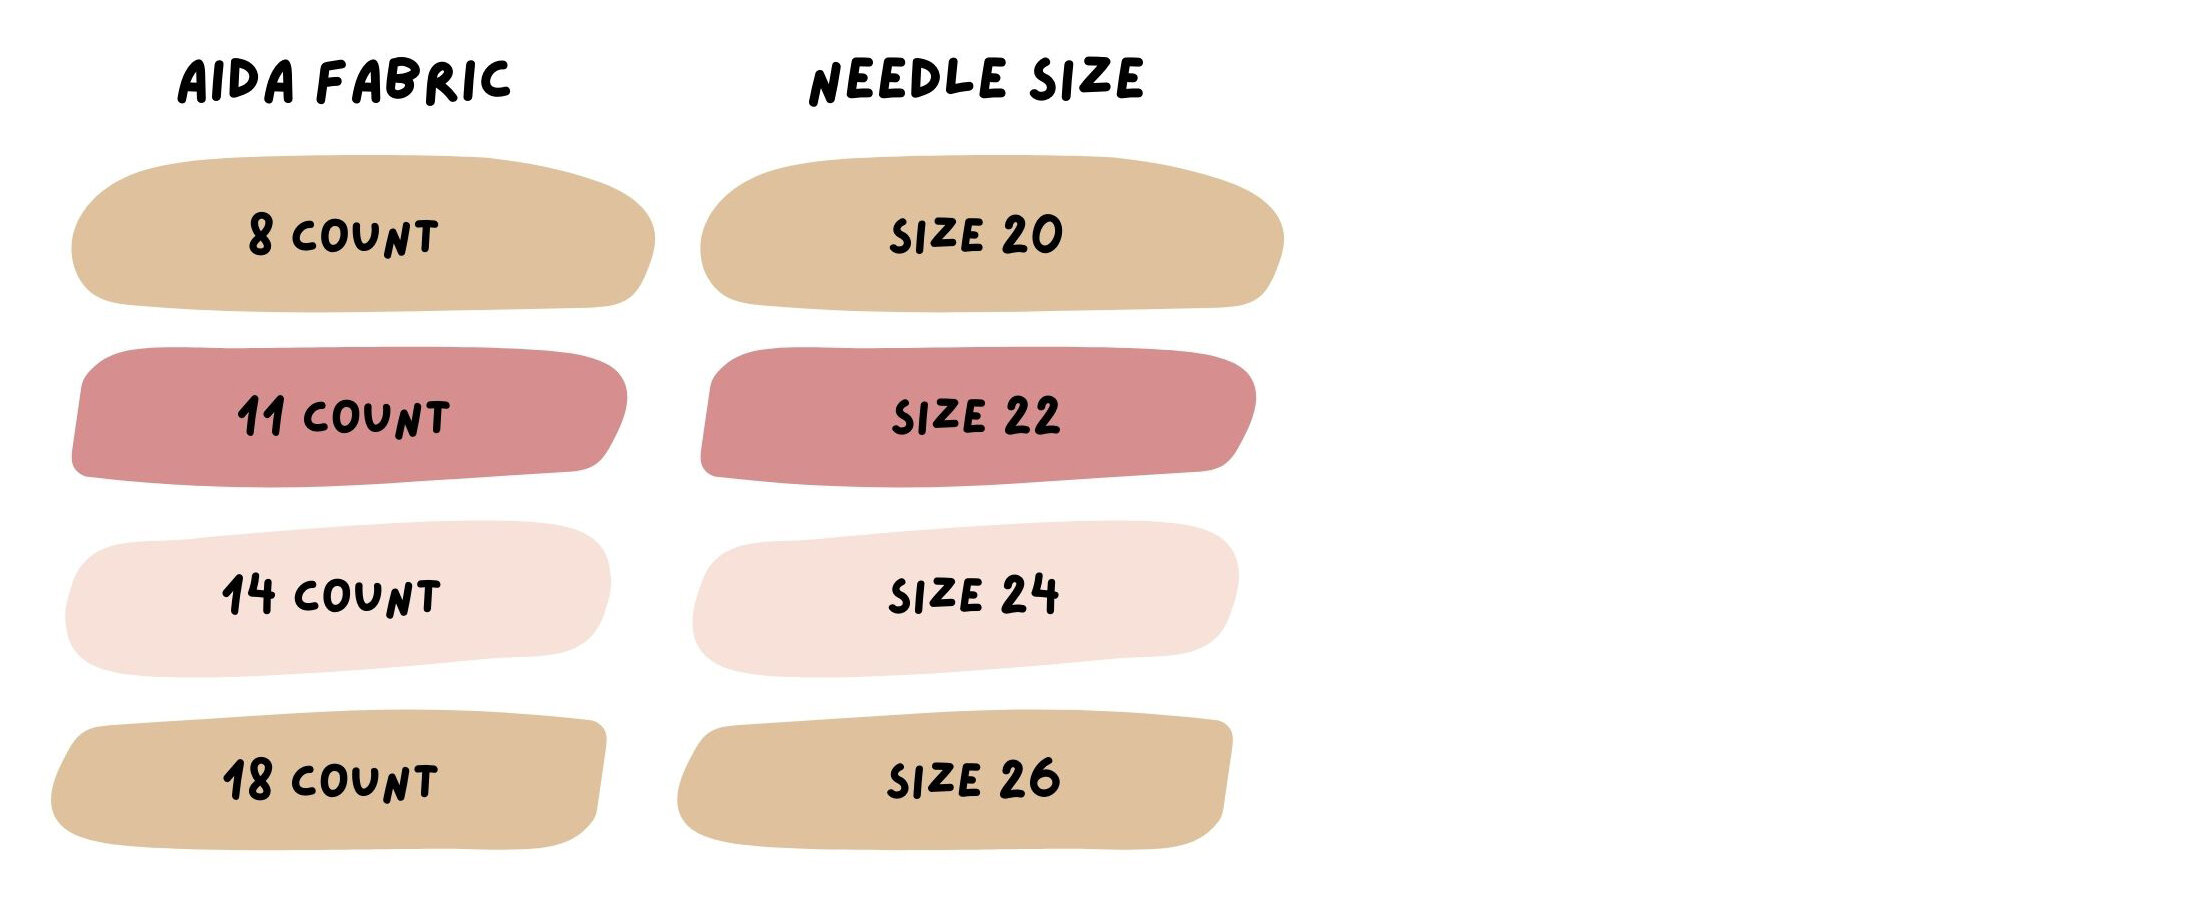 Needle Size Guide. Cross stitch